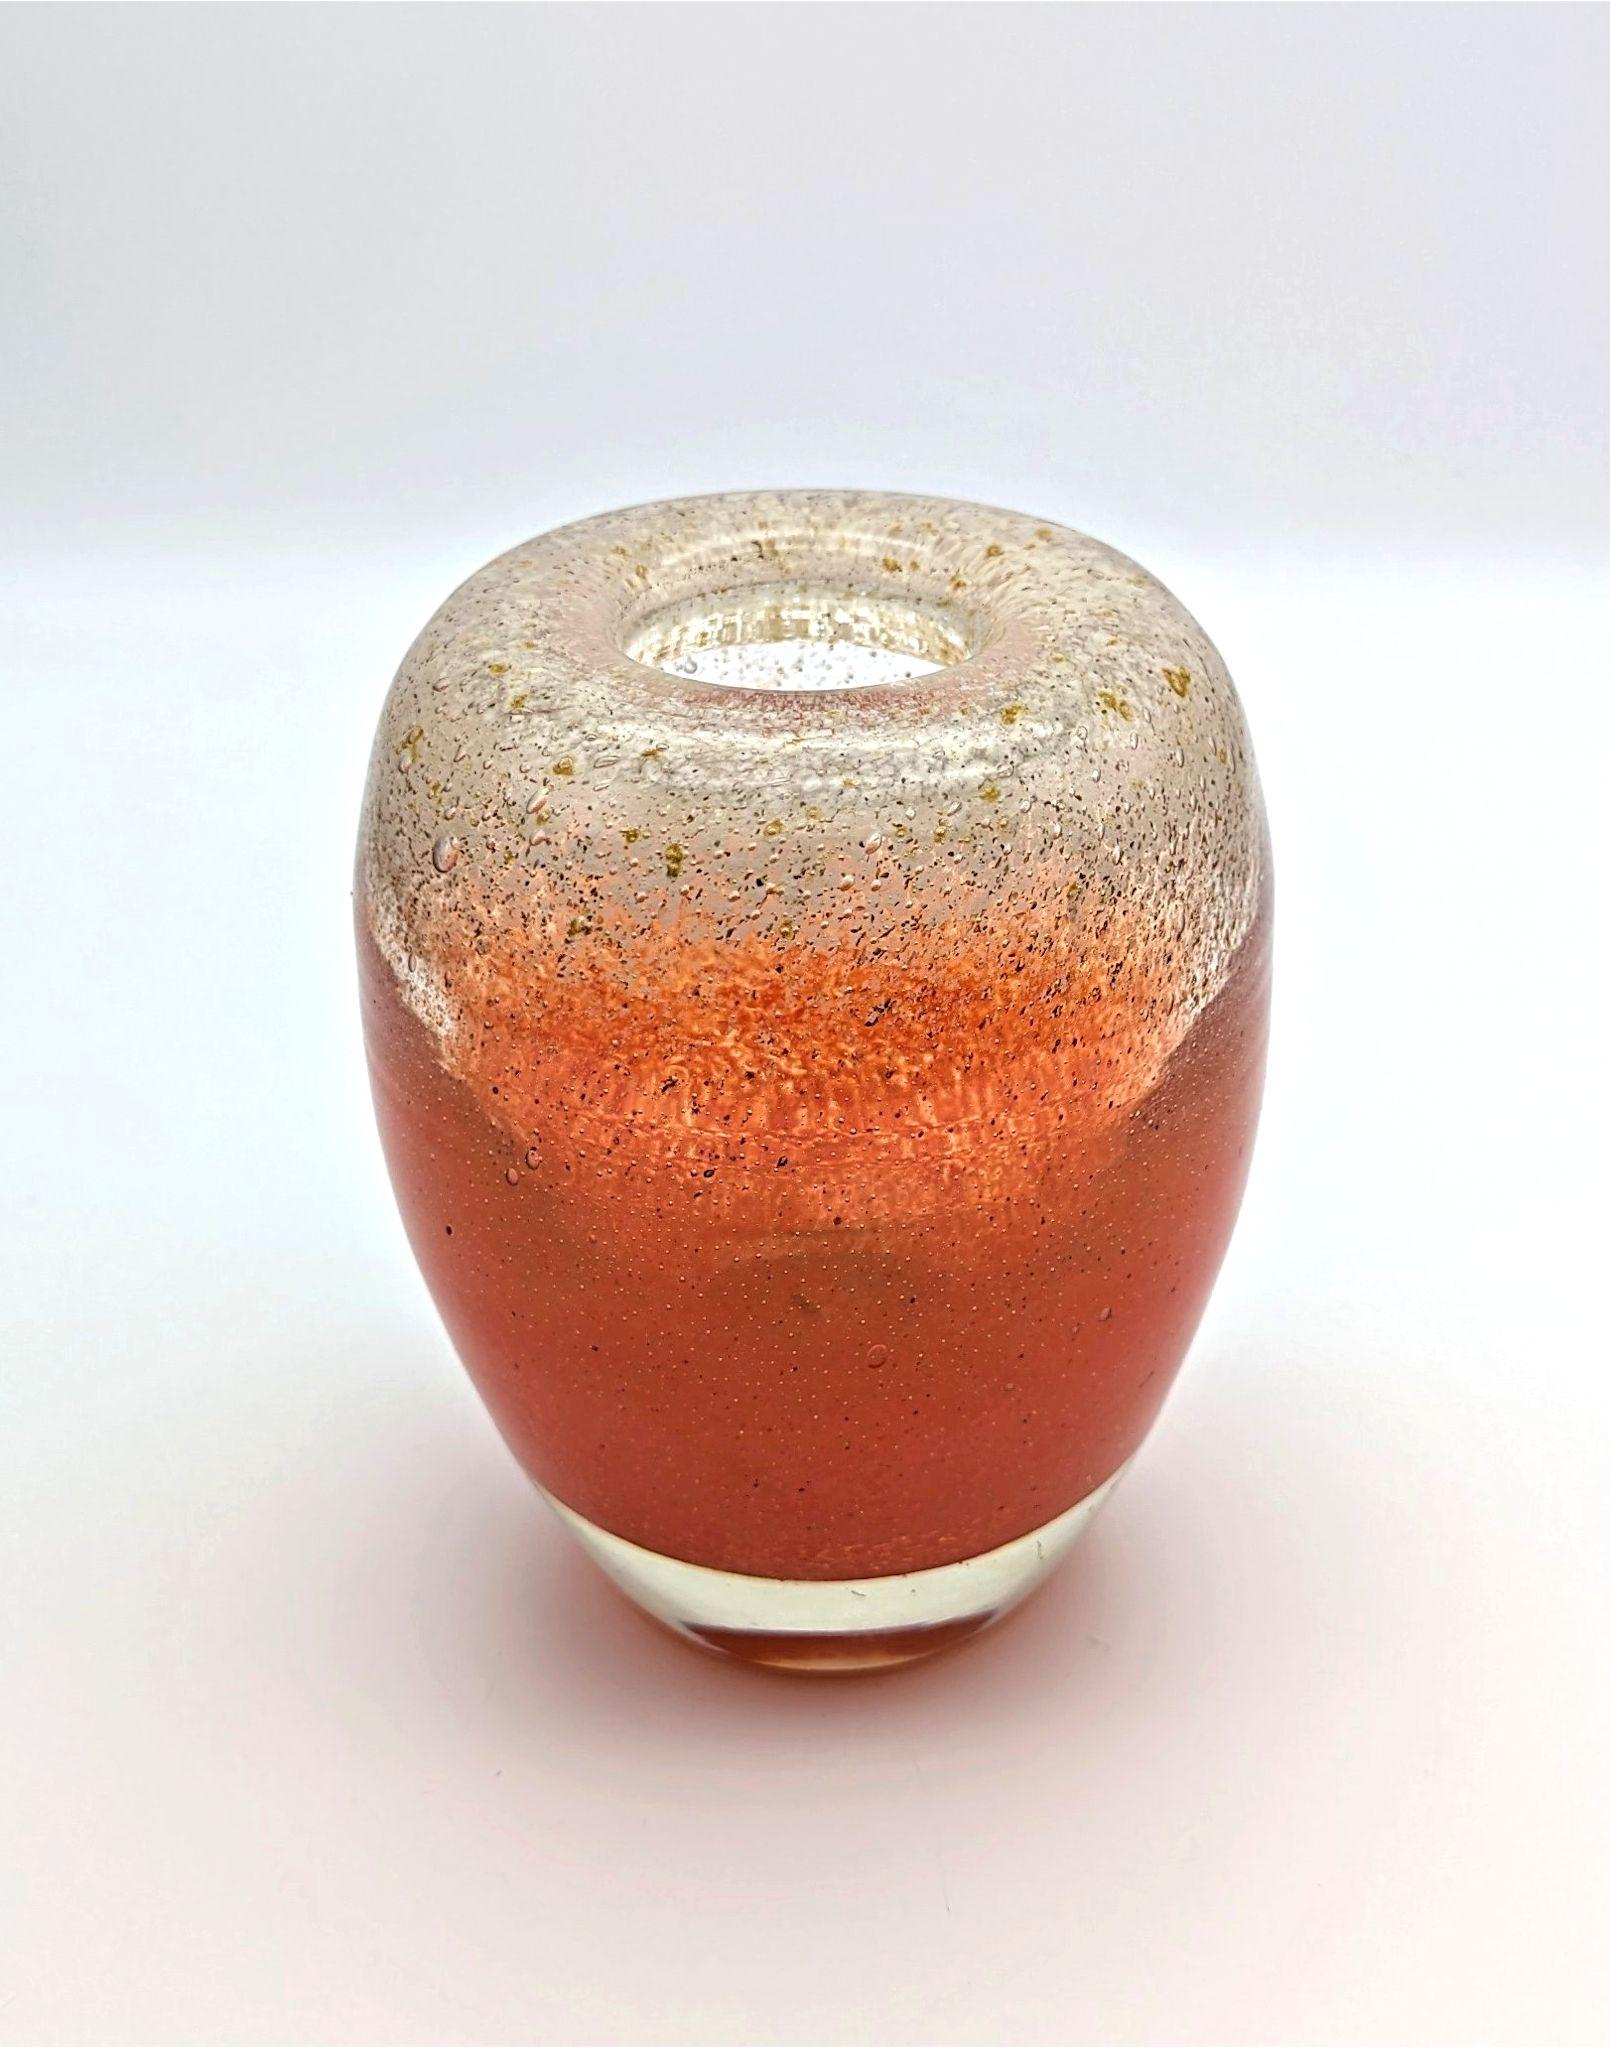 Die eiförmige Form dieser Vase wurde in den 1930er Jahren von Walter Dexel entworfen, der in den 1920er Jahren mit Künstlern des Bauhauses in Verbindung stand. Die klare und elegante Form wurde dann von Karl WIedmann und seinem Team im ehemaligen